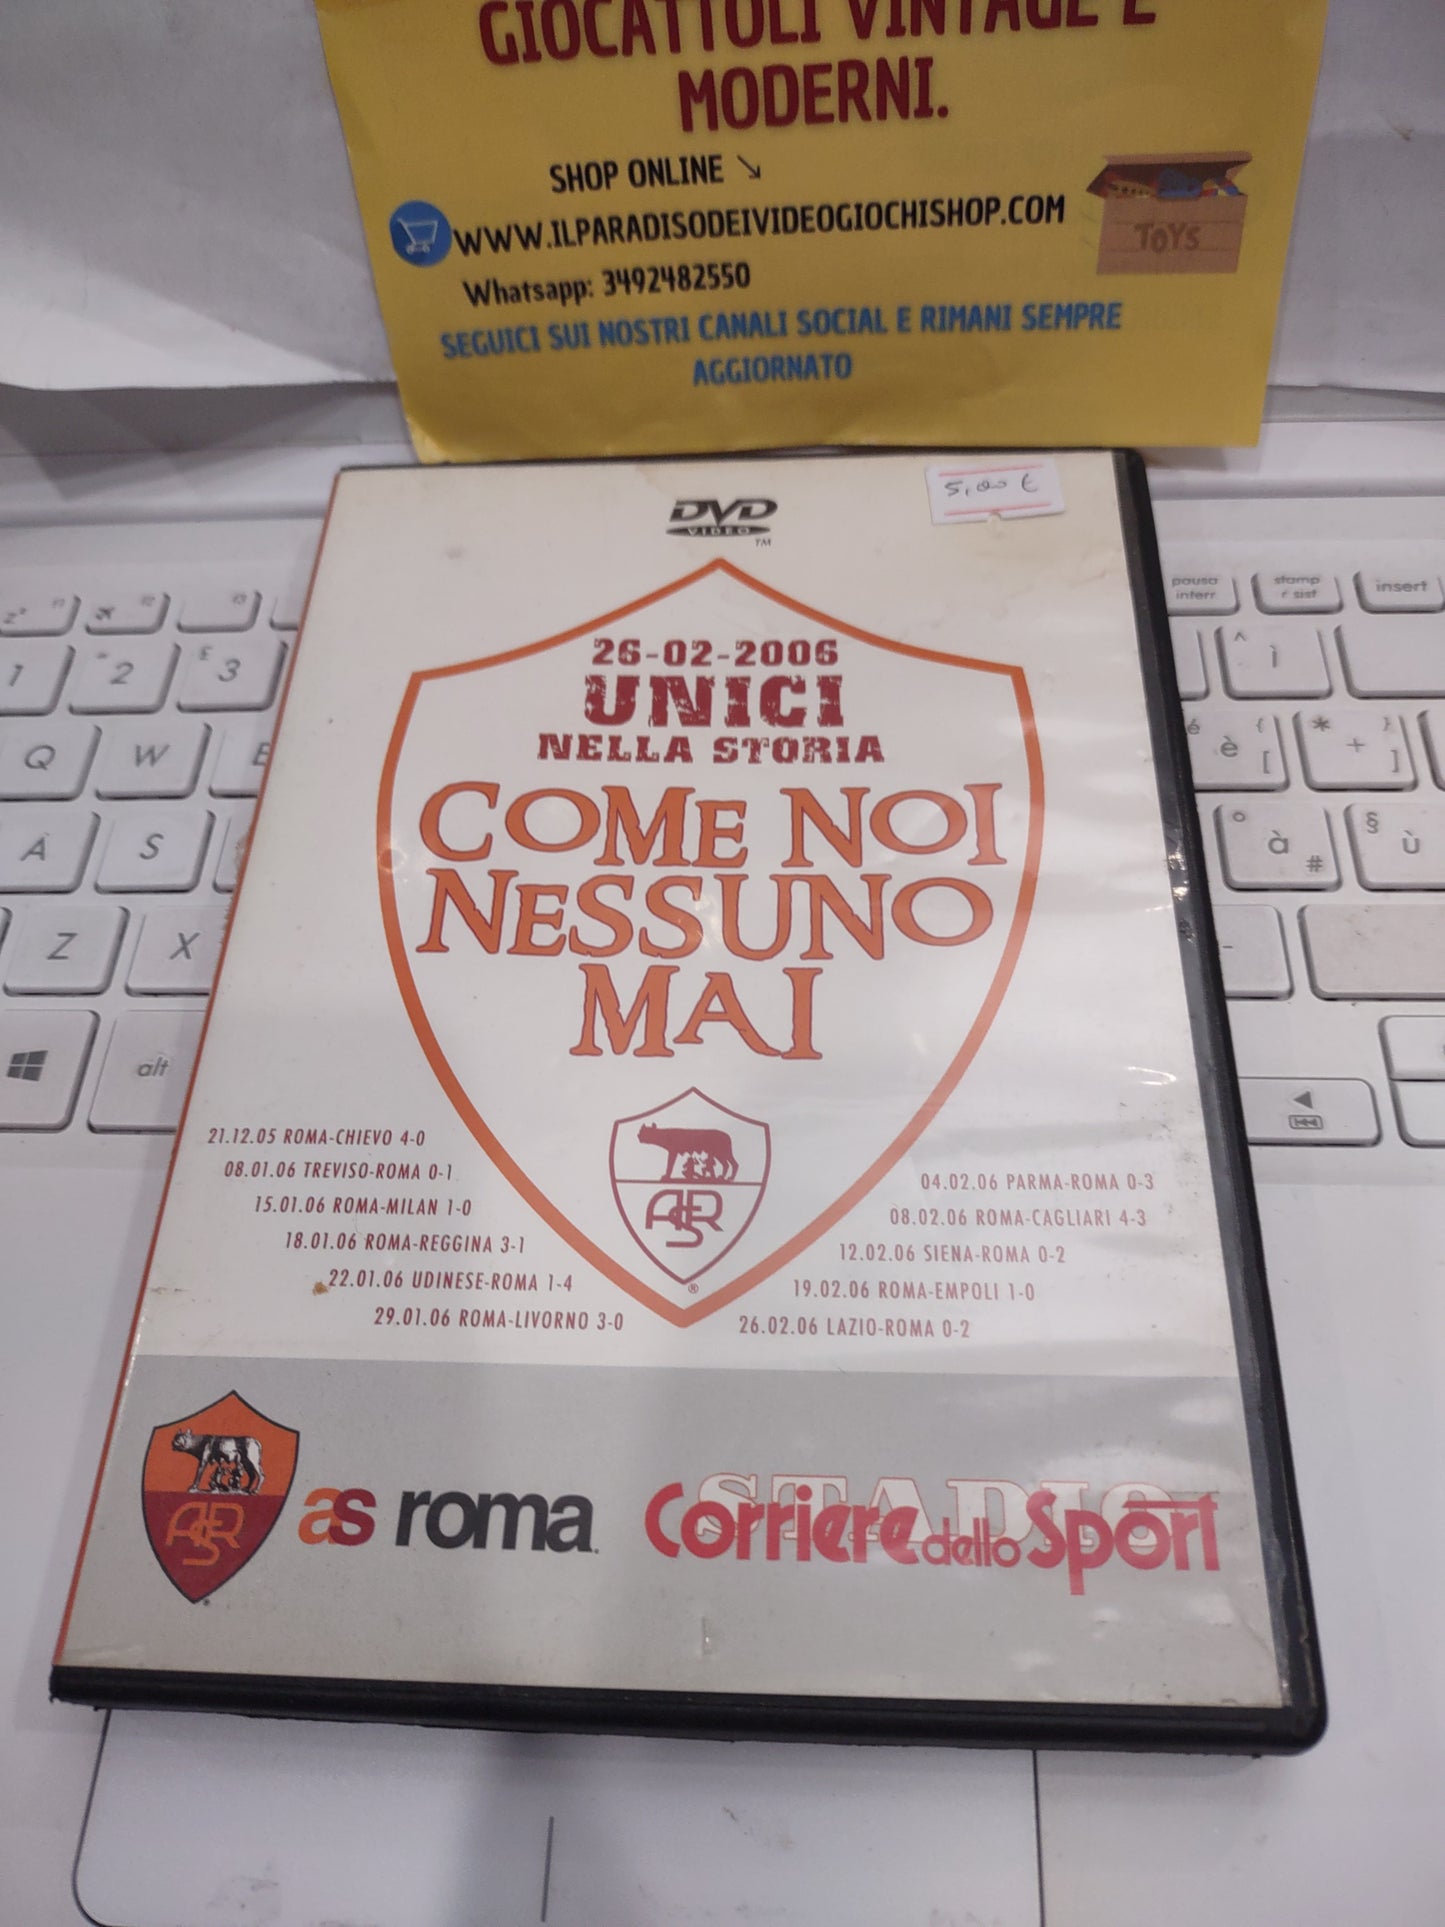 DVD AS Roma come noi nessuno mai unici nella storia 26/2/2006